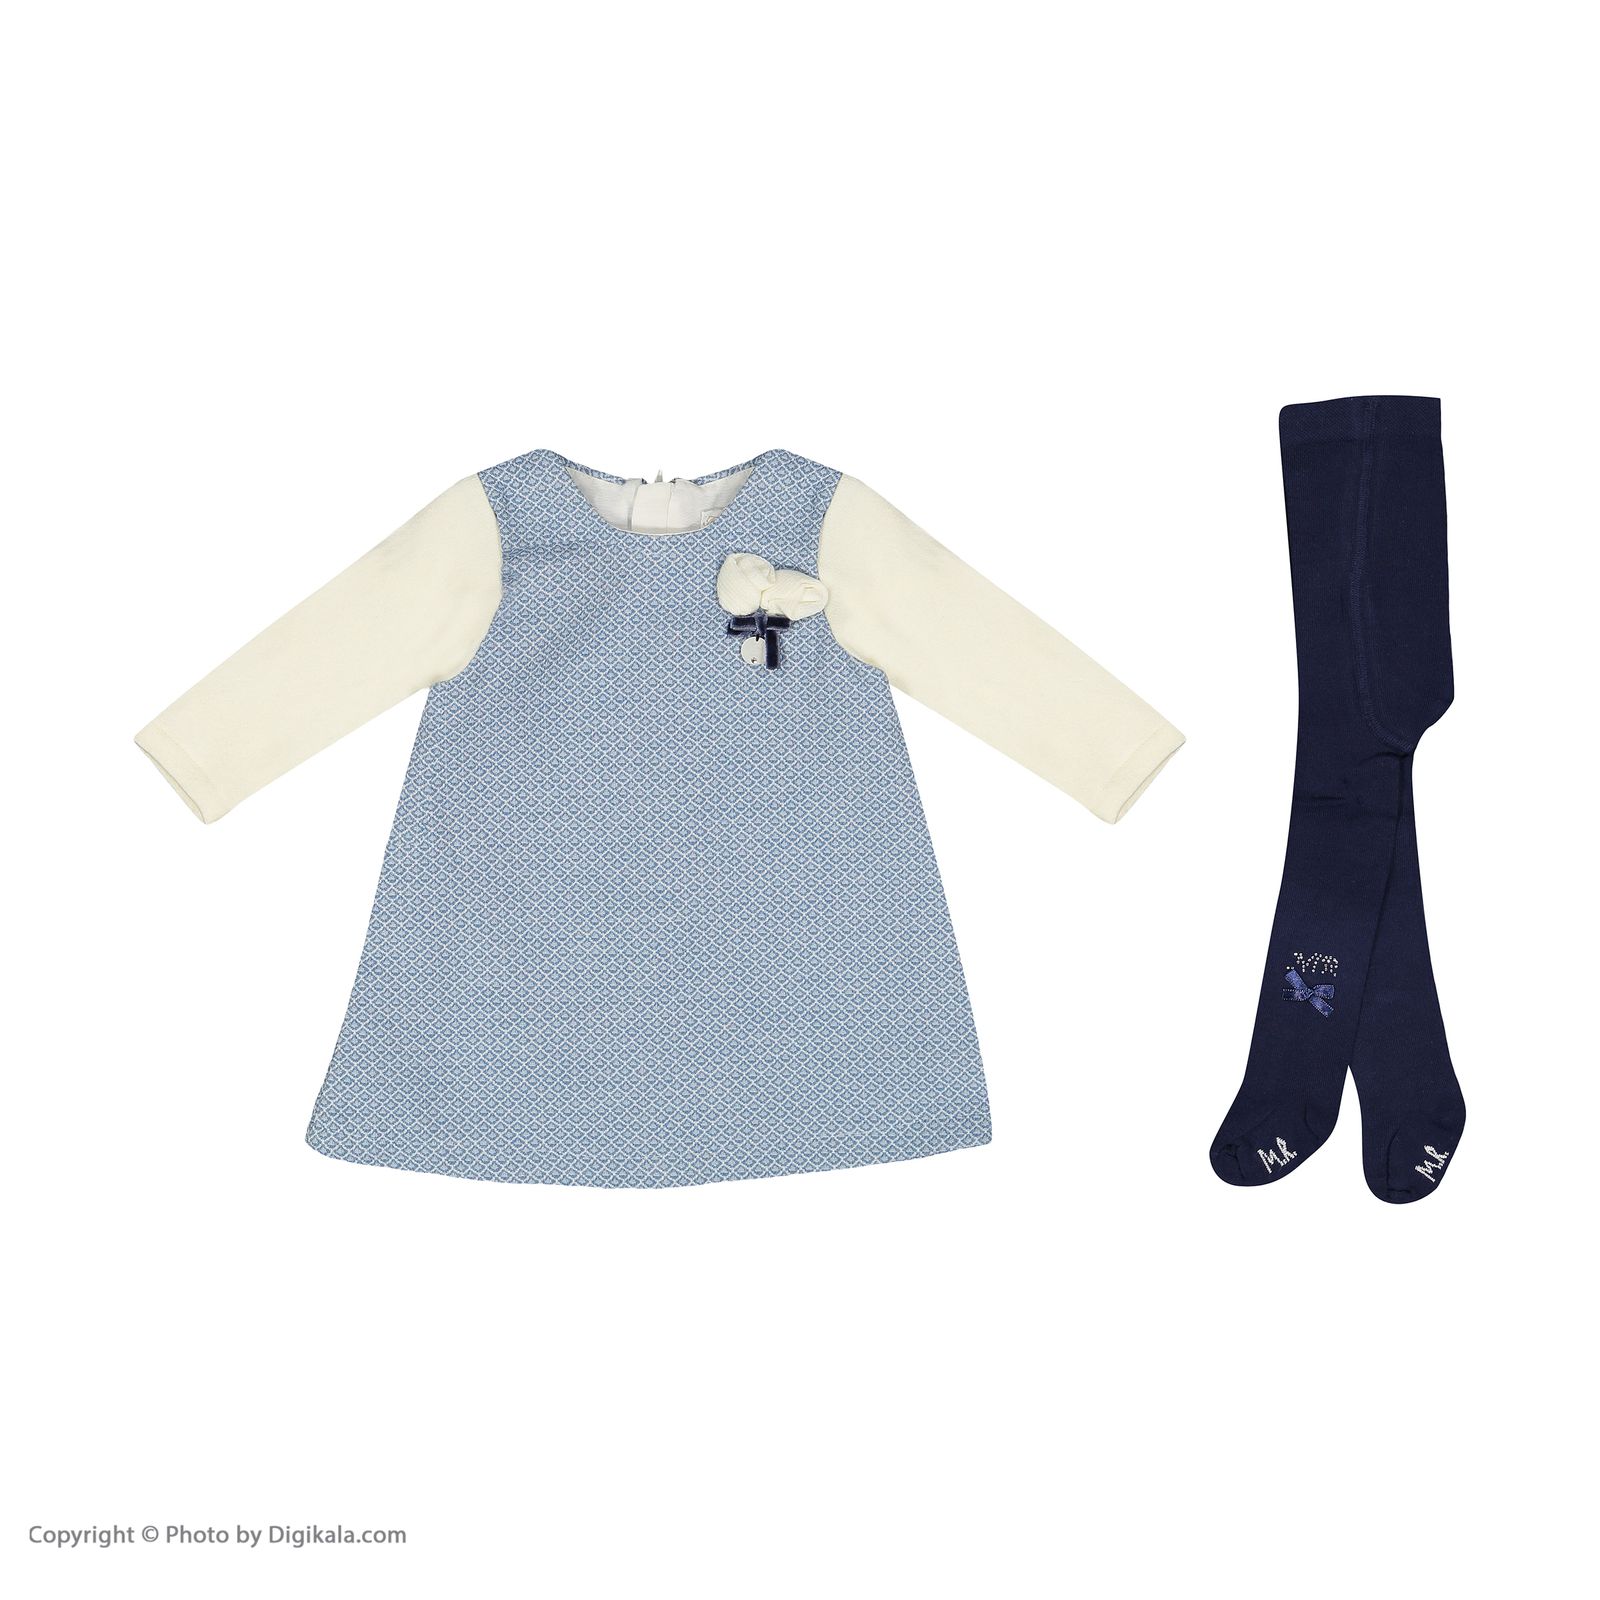 ست پیراهن و جوراب شلواری نوزادی دخترانه مونا رزا مدل 2141122-50 -  - 2